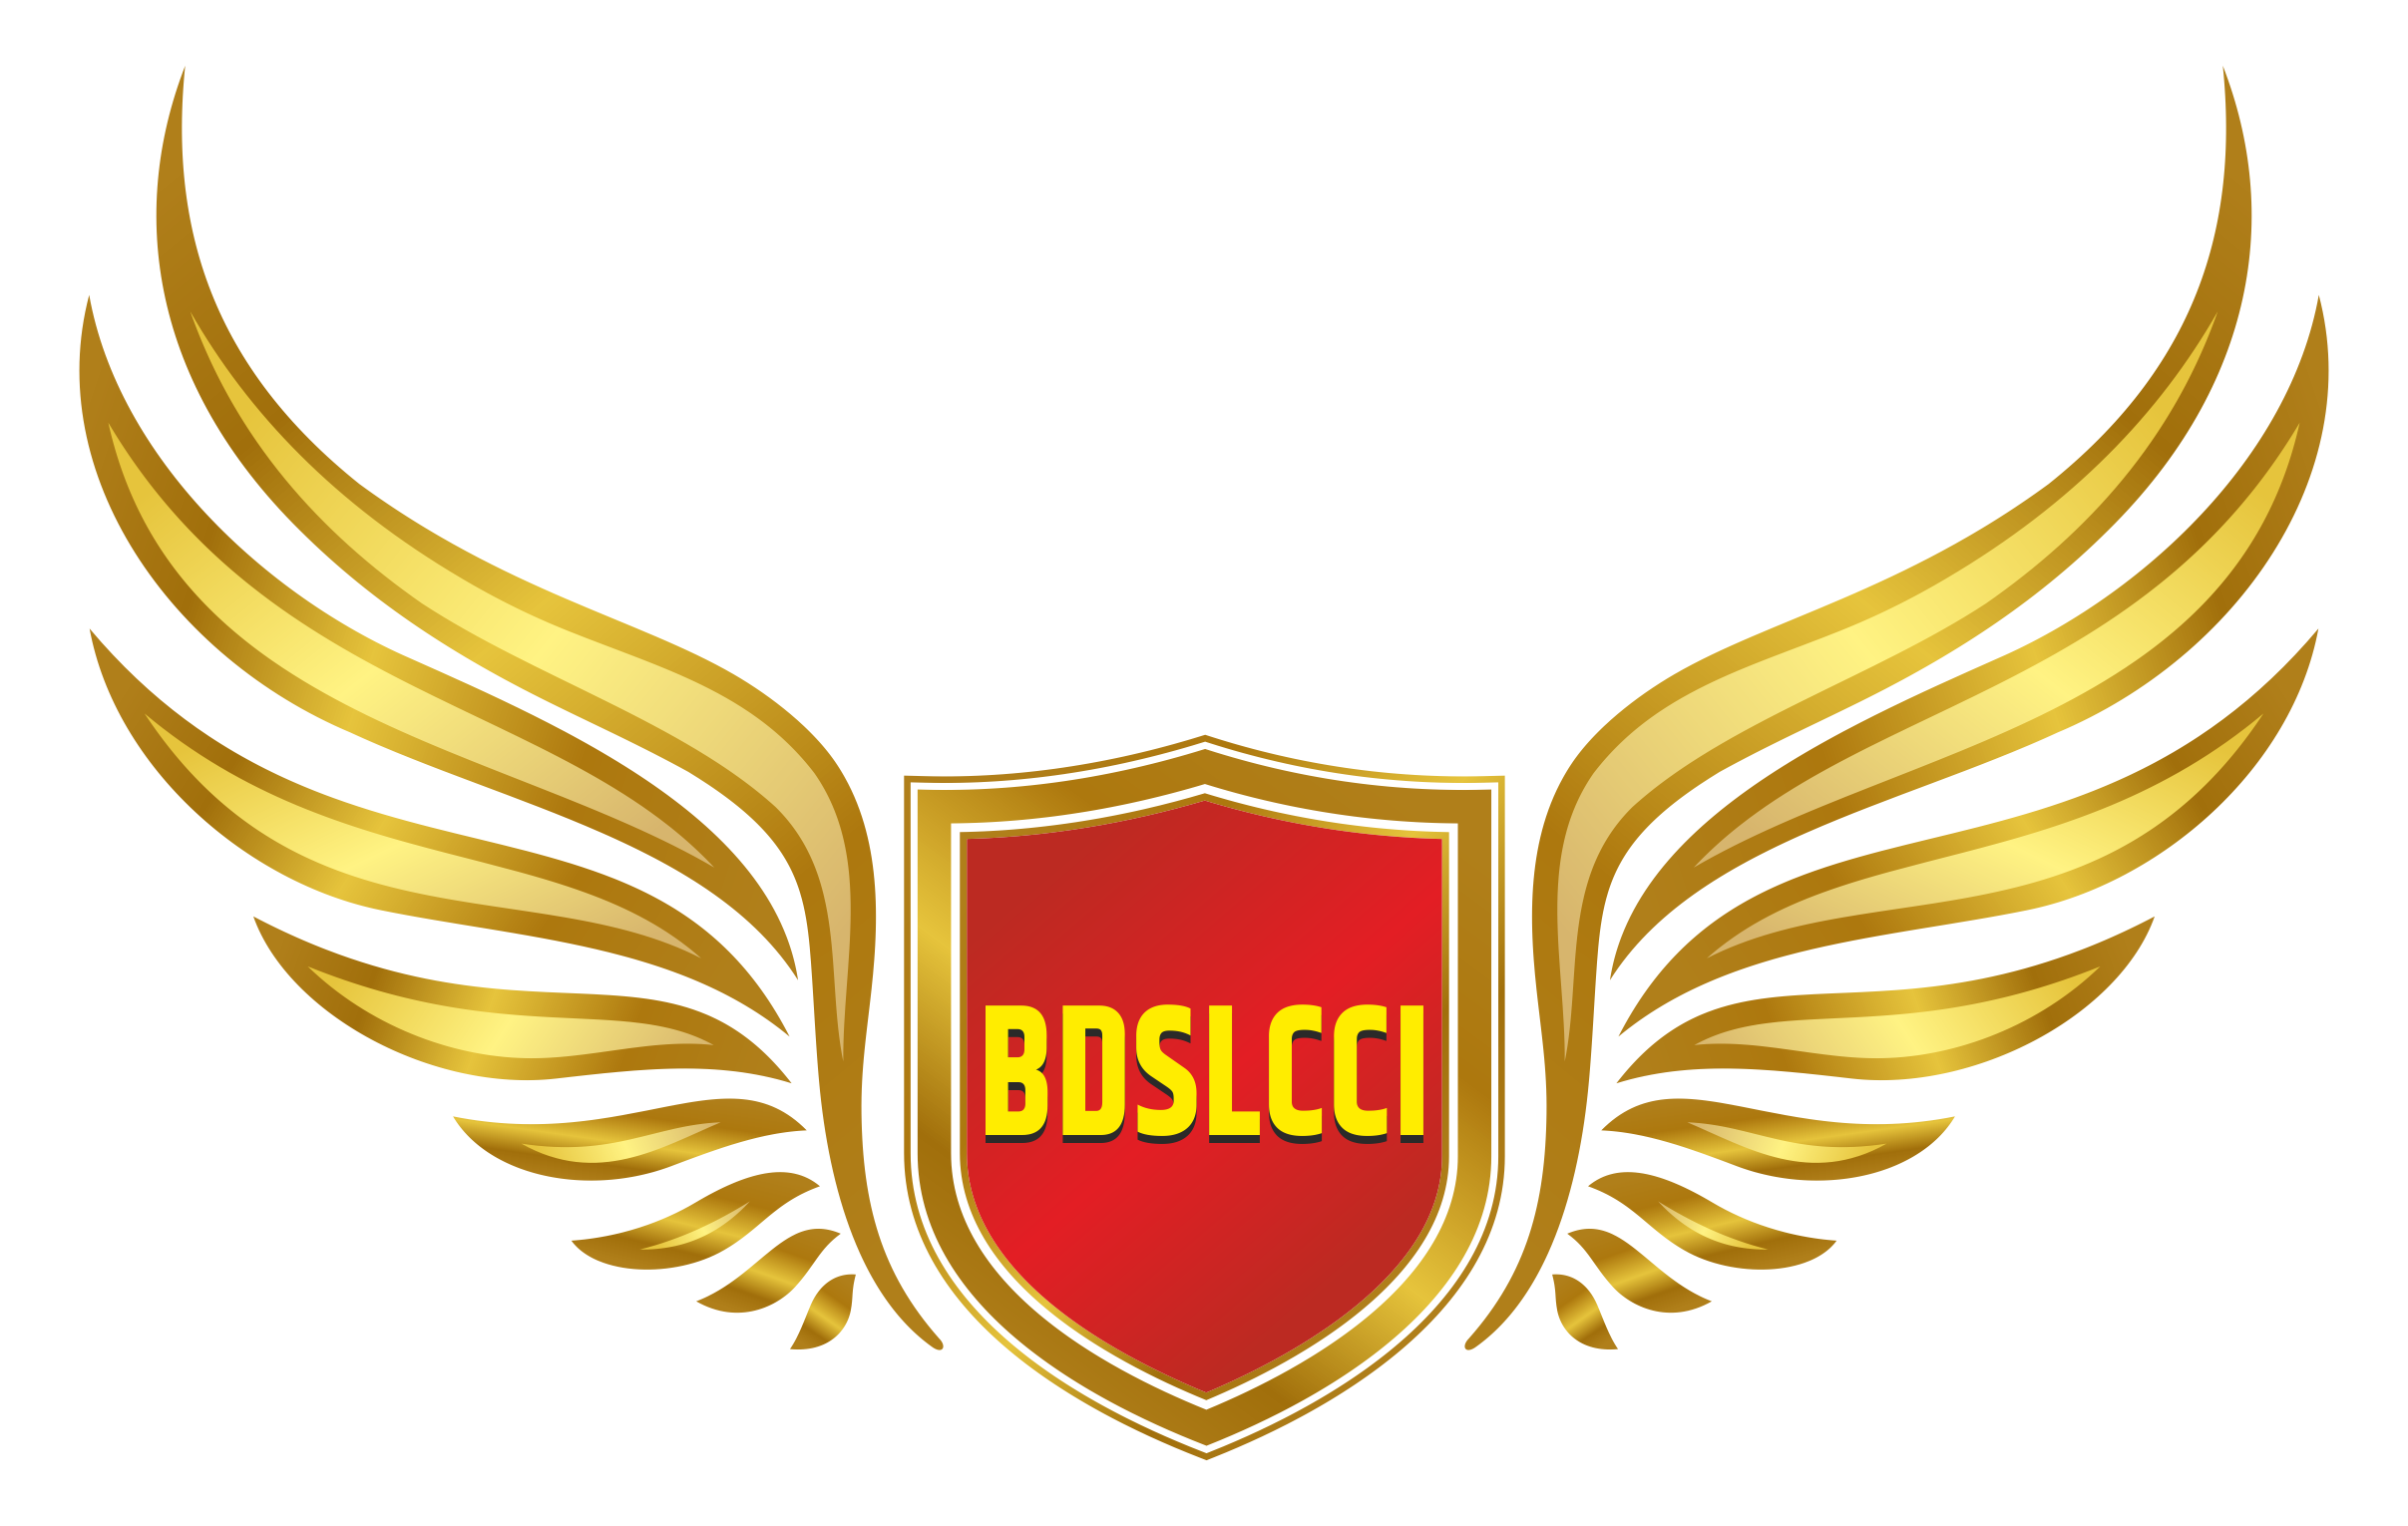 BDSLCCI Logo